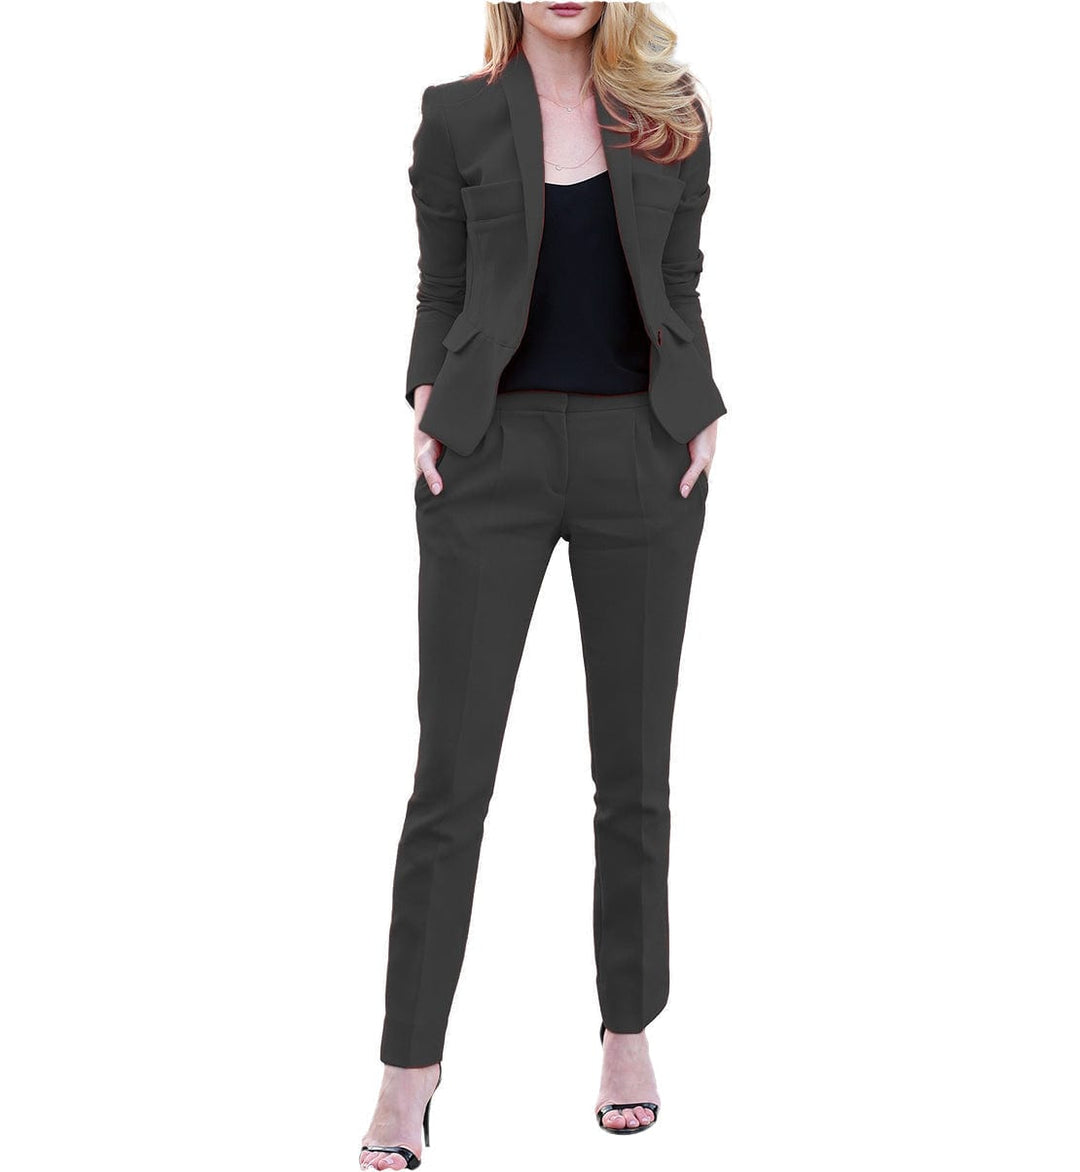 solovedress 2 Pieces Single Button Notch Lapel Women Suit (Blazer+Pants)